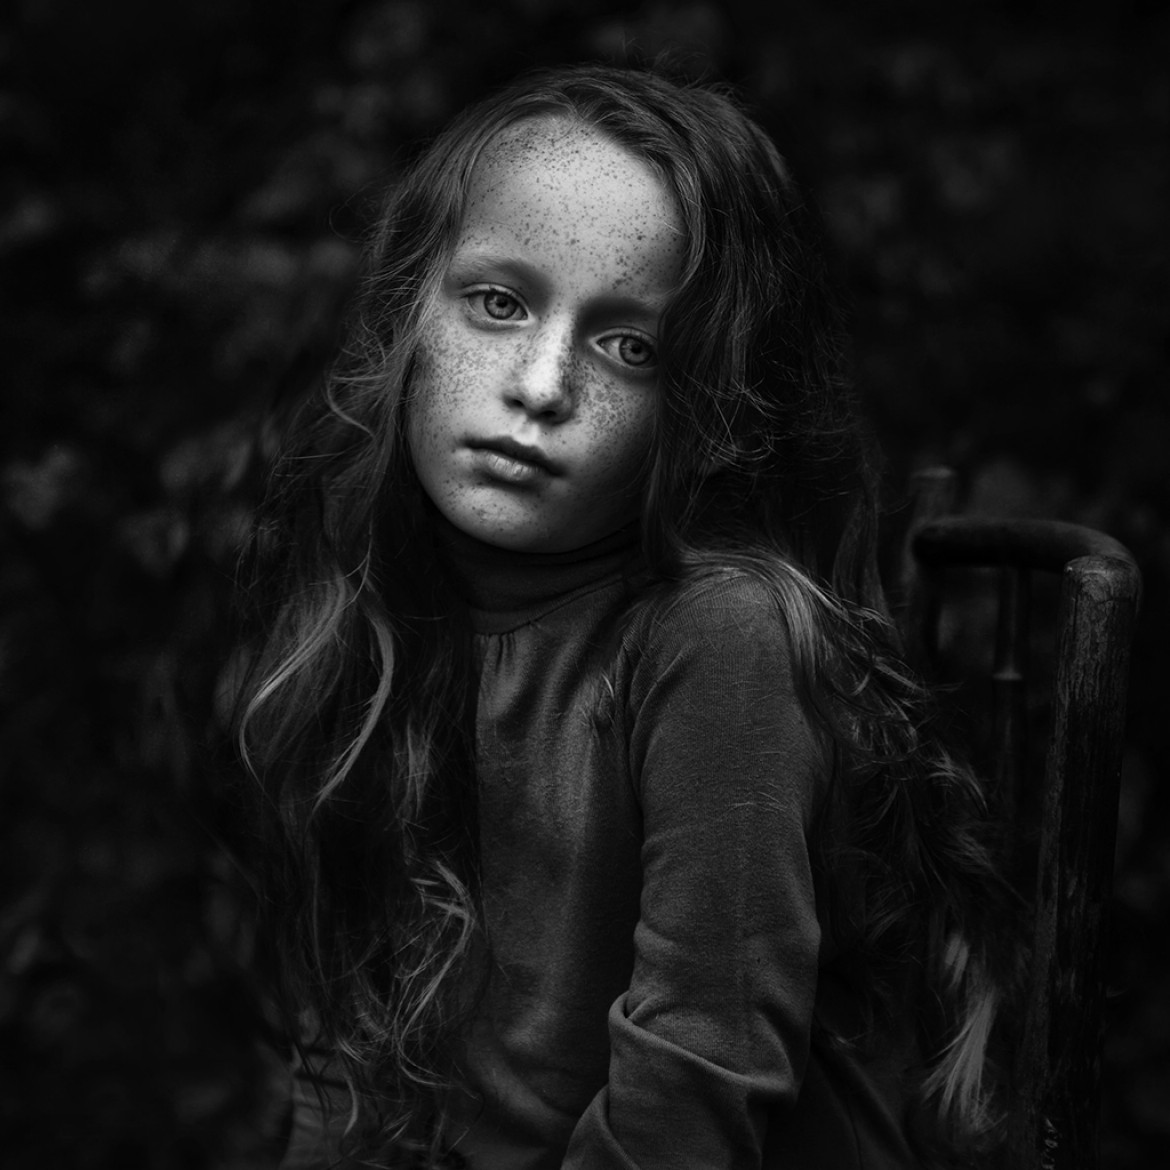 fot. Kamila Celary-Kmiecik, wyróżnienie w kategorii Portrait / B&W Child 2018